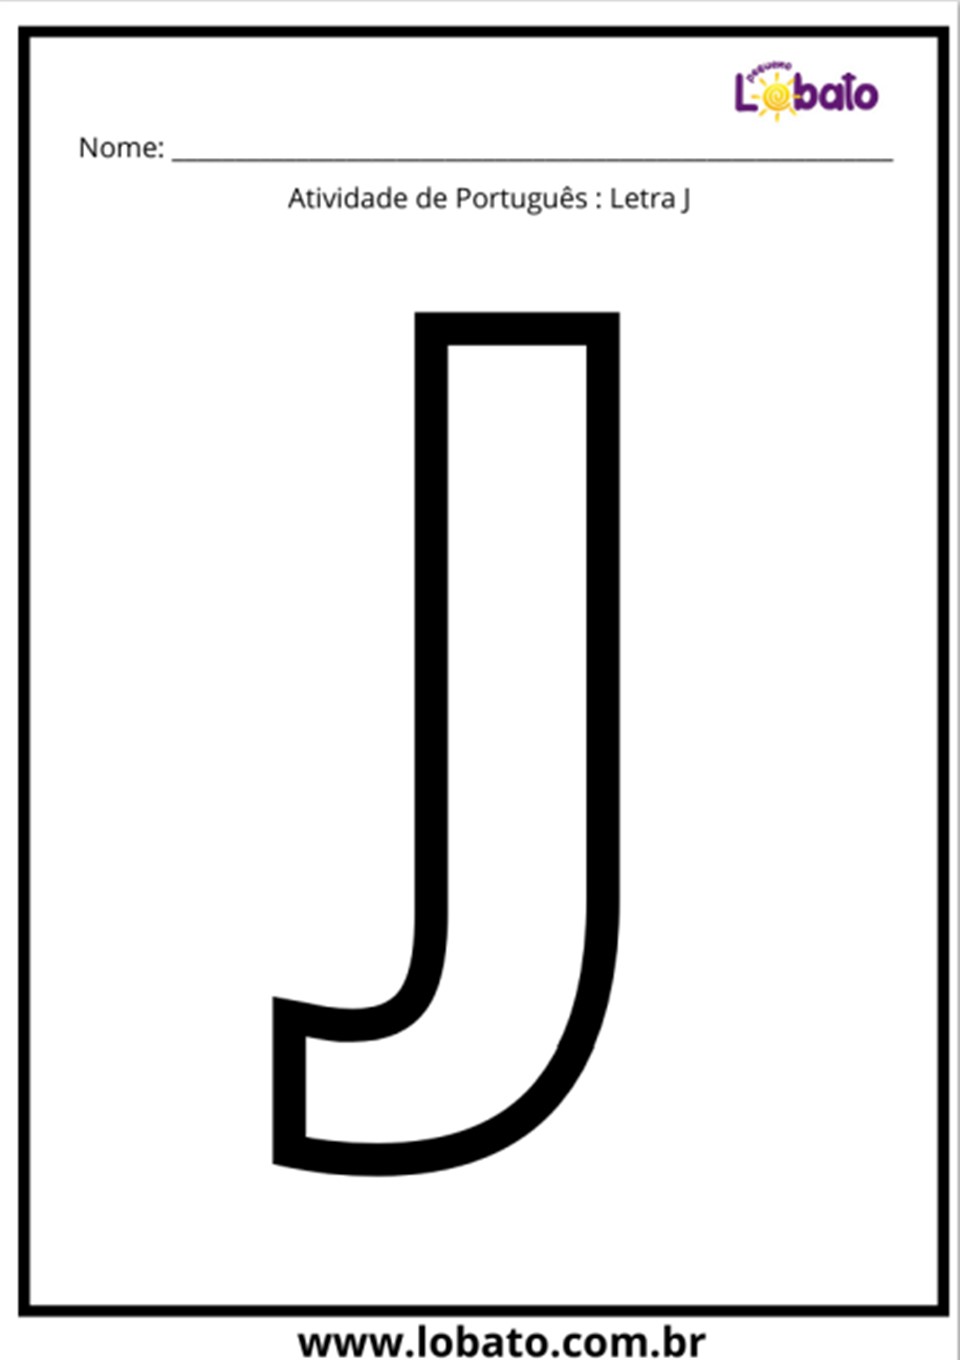 Atividade de português com a letra J para imprimir